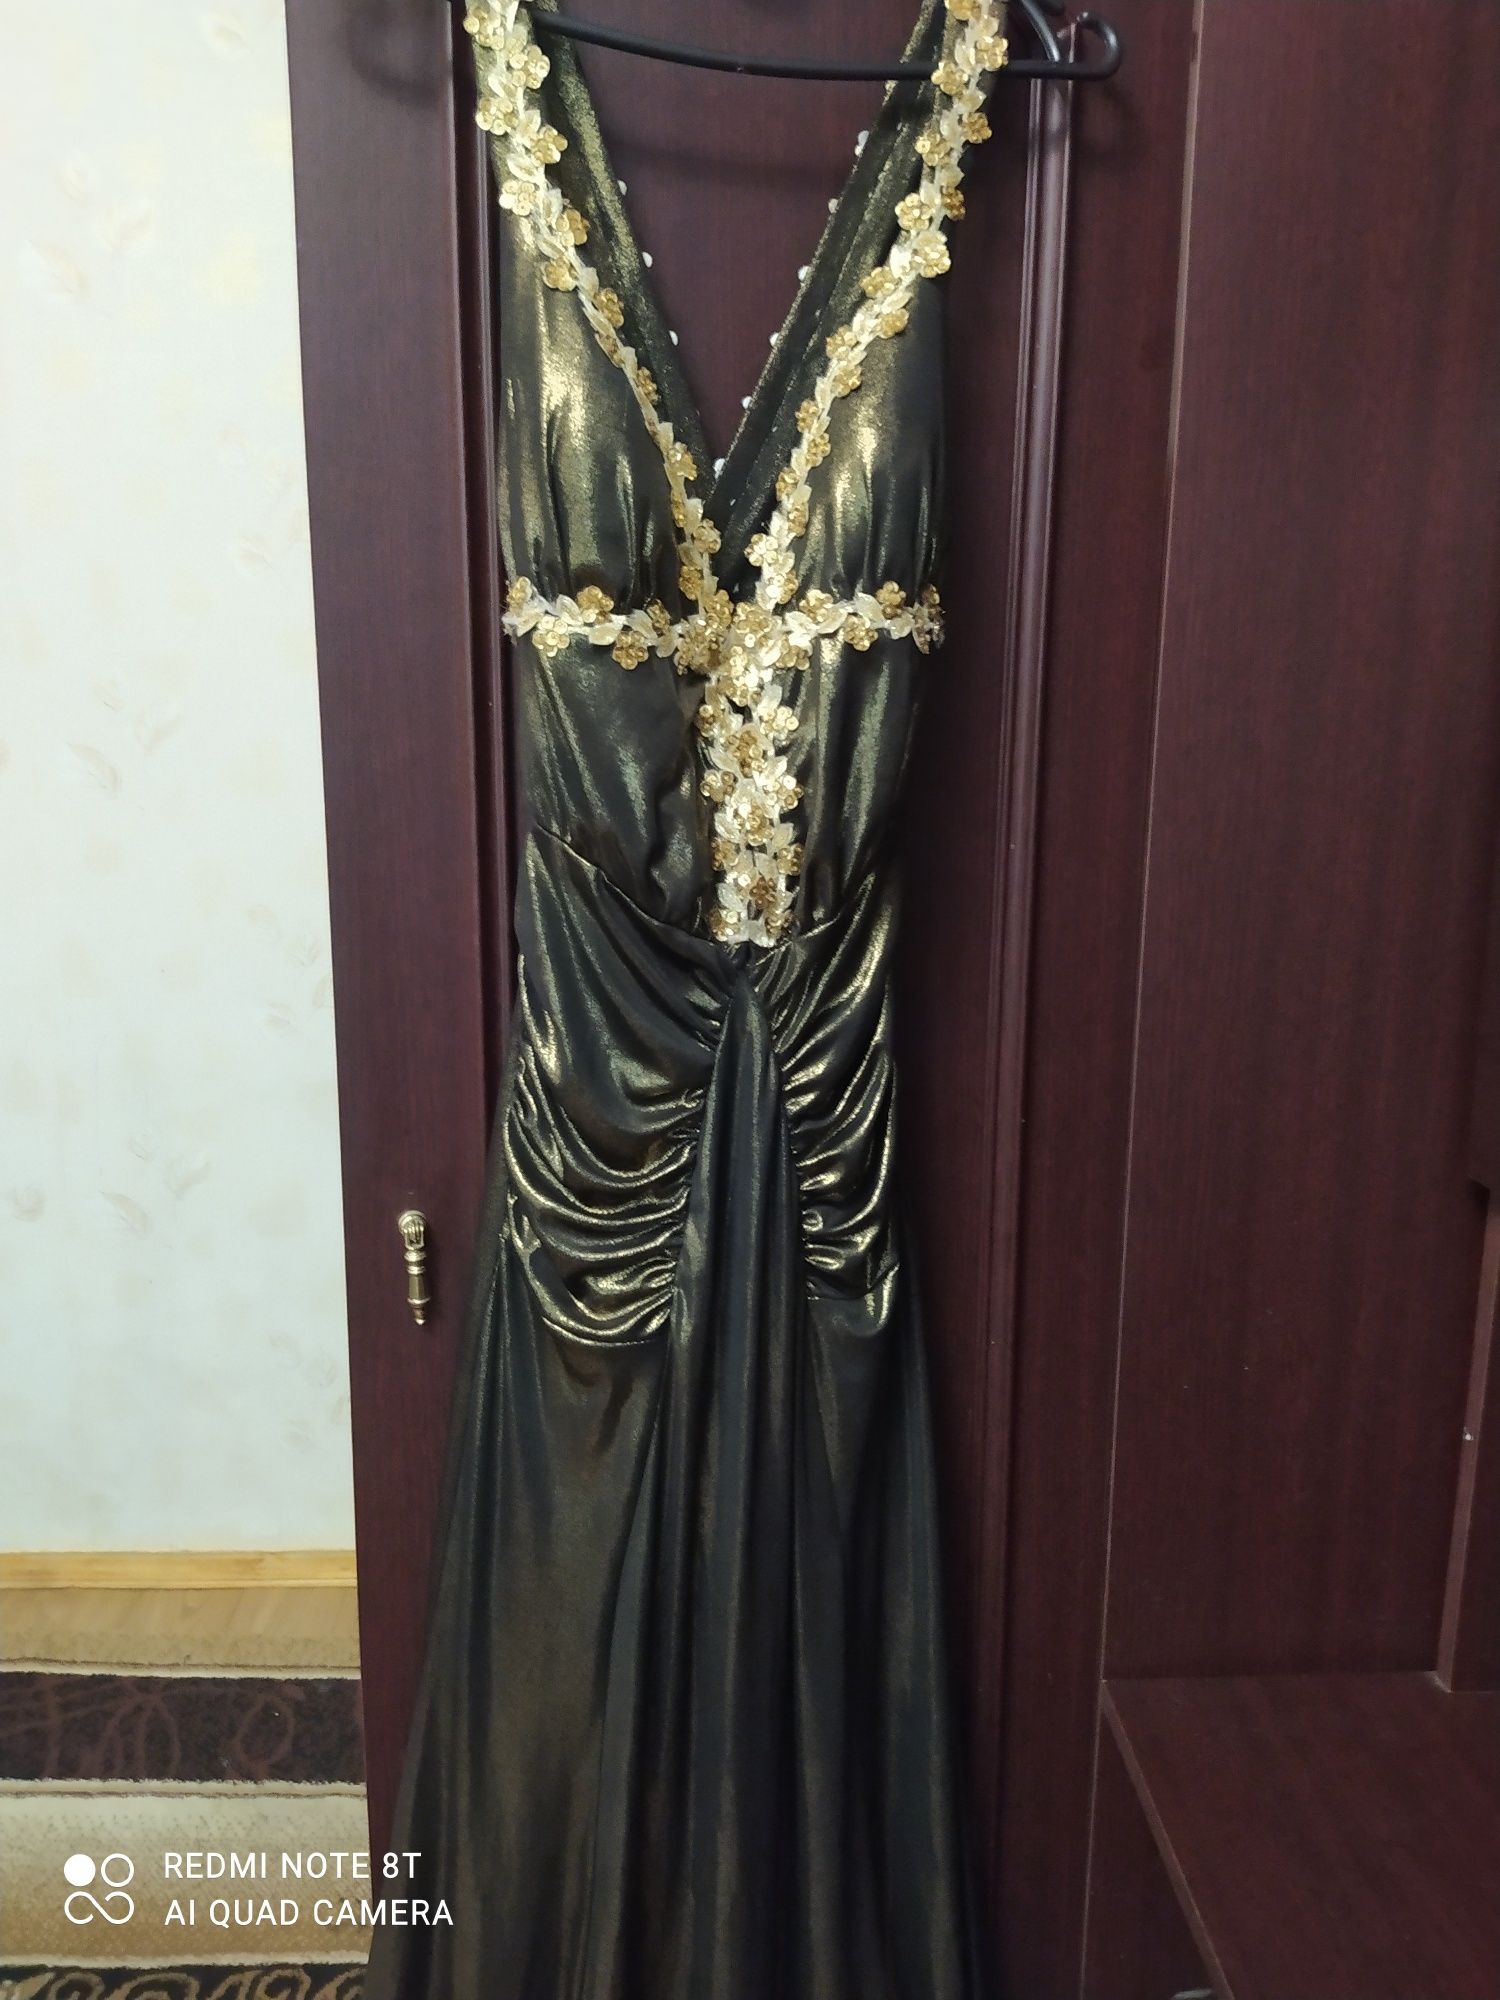 Распродажа: Нарядный сарафан платье ткань в изделии 250 грн за все